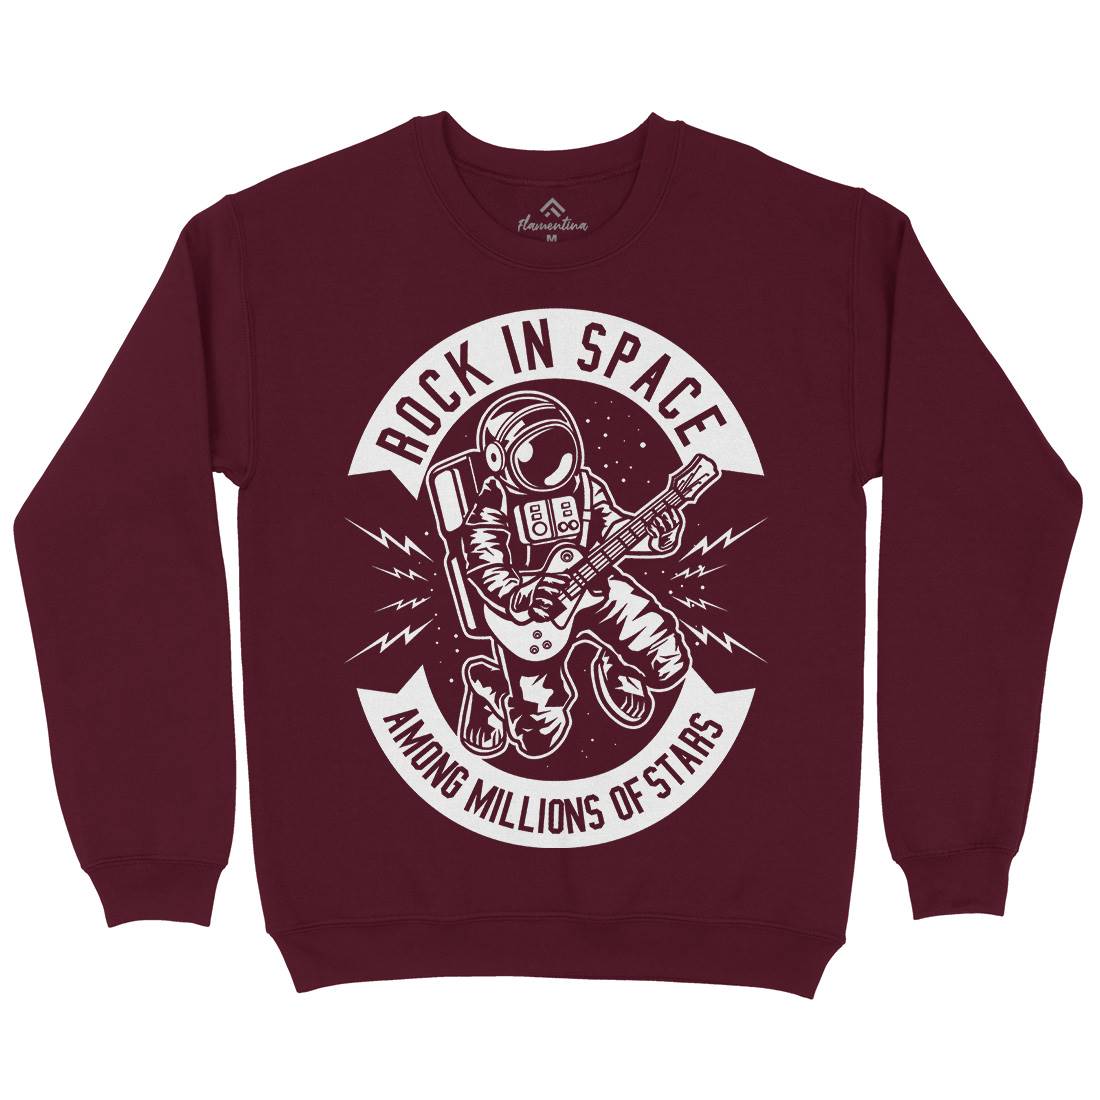 Rock In Space Kids Crew Neck Sweatshirt Music B612